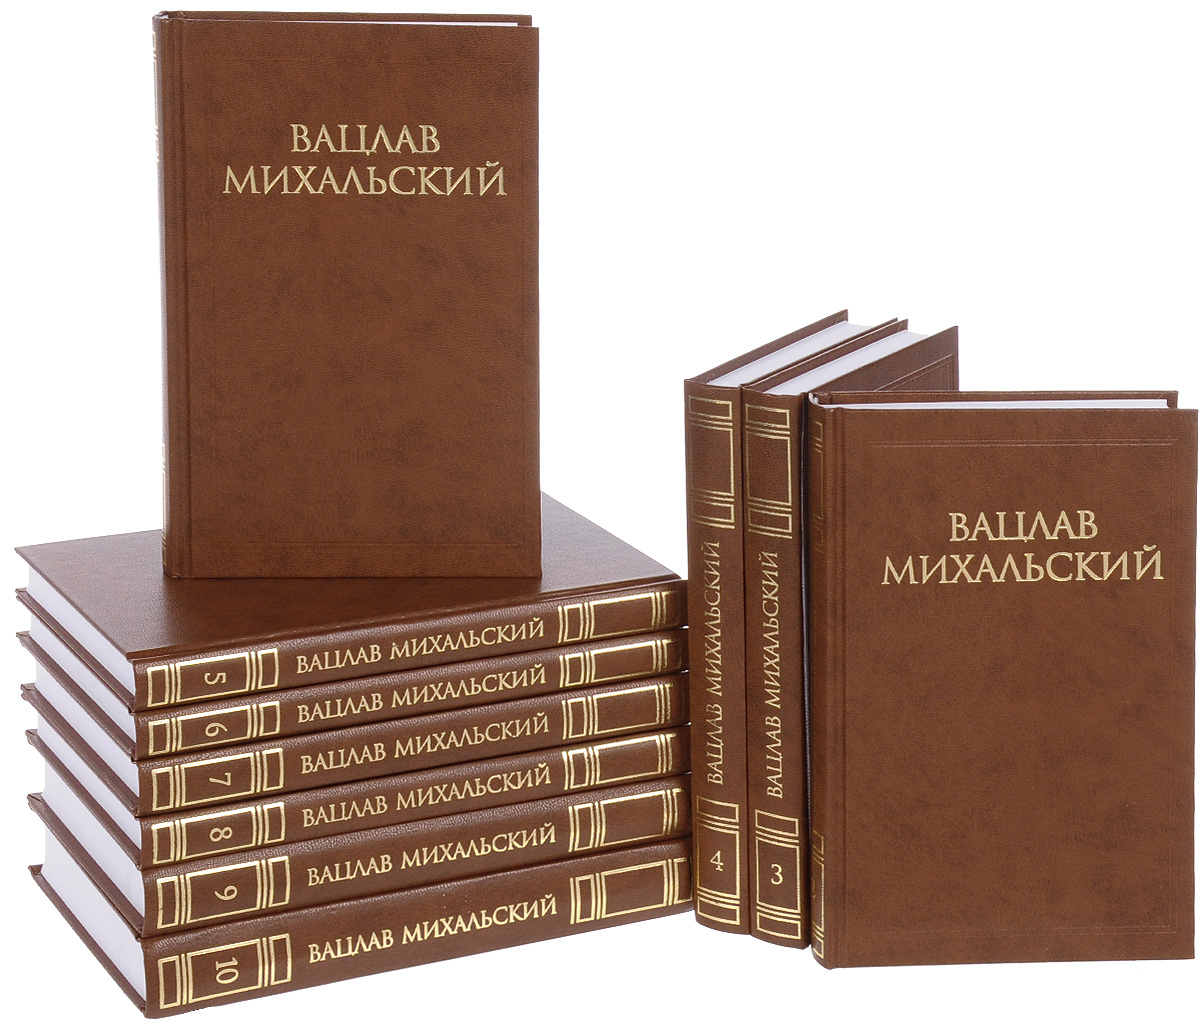 Вацлав Михальский. Собрание сочинений. В 10 томах (комплект из 10 книг)